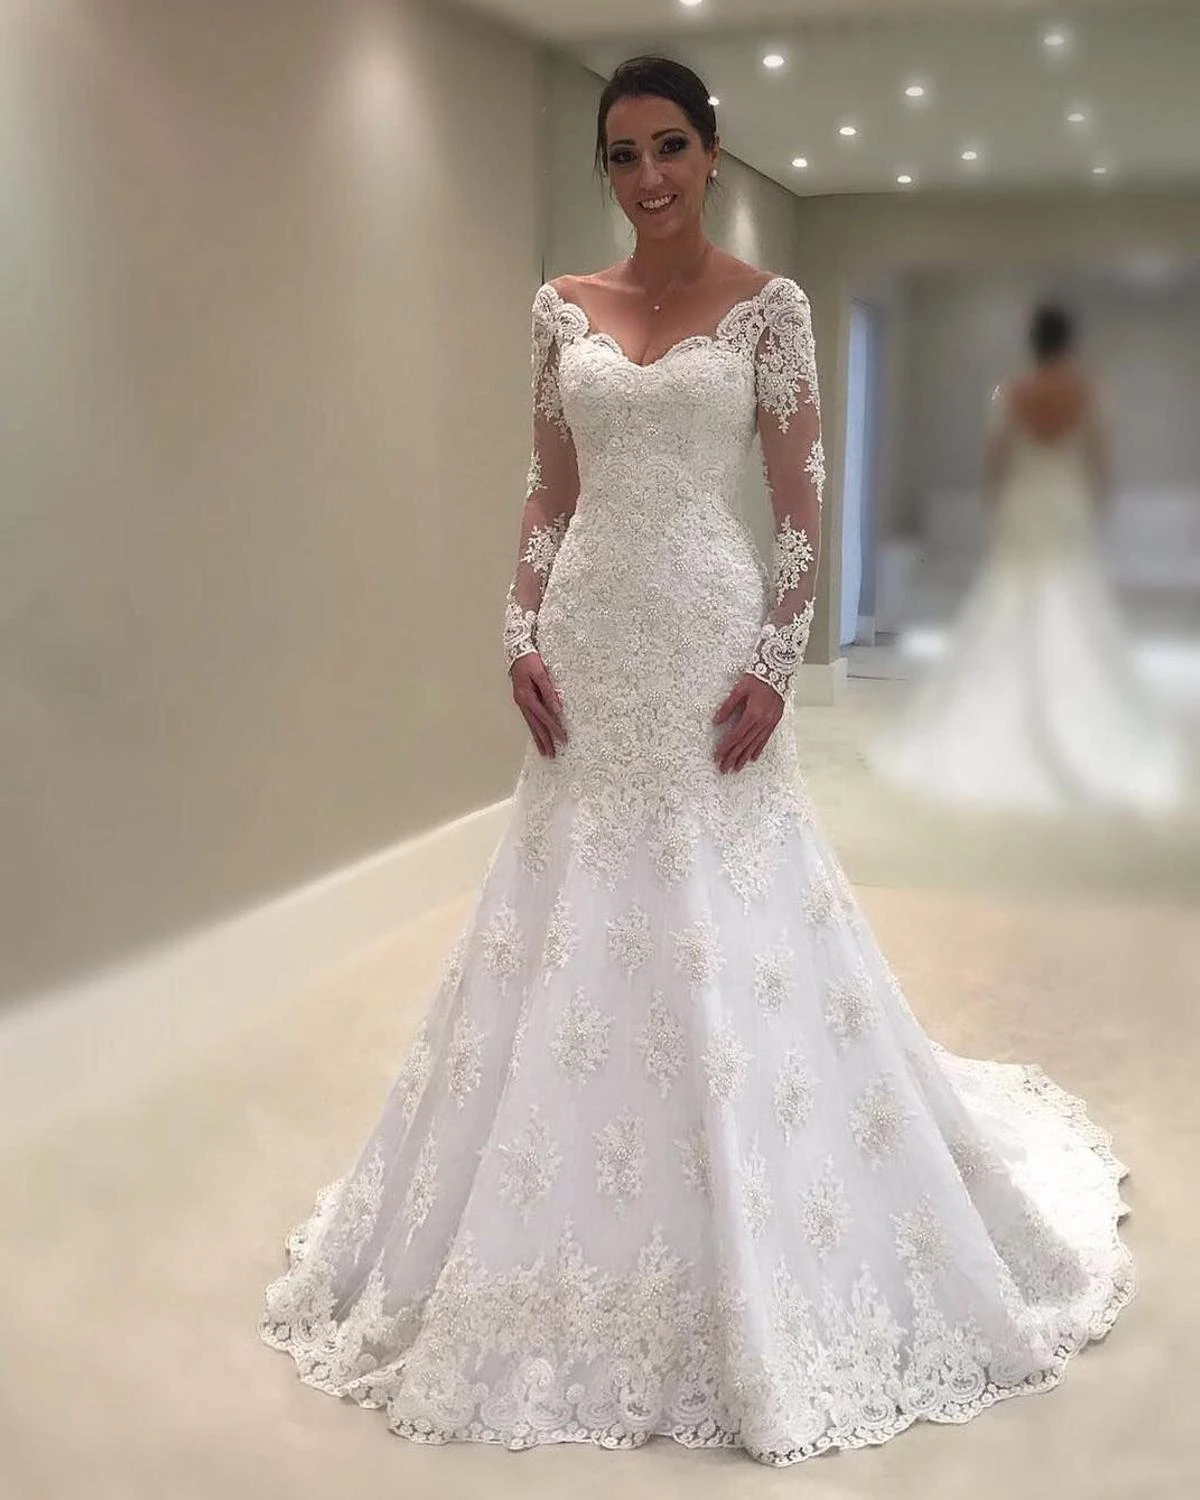 Vestido De Noiva Elegant White/Ivory Lace Mermaid Wedding Dresses 2019 V  Neck Backless Long Sleeve Bridal Wedding Gown for Bride|Wedding Dresses| -  AliExpress